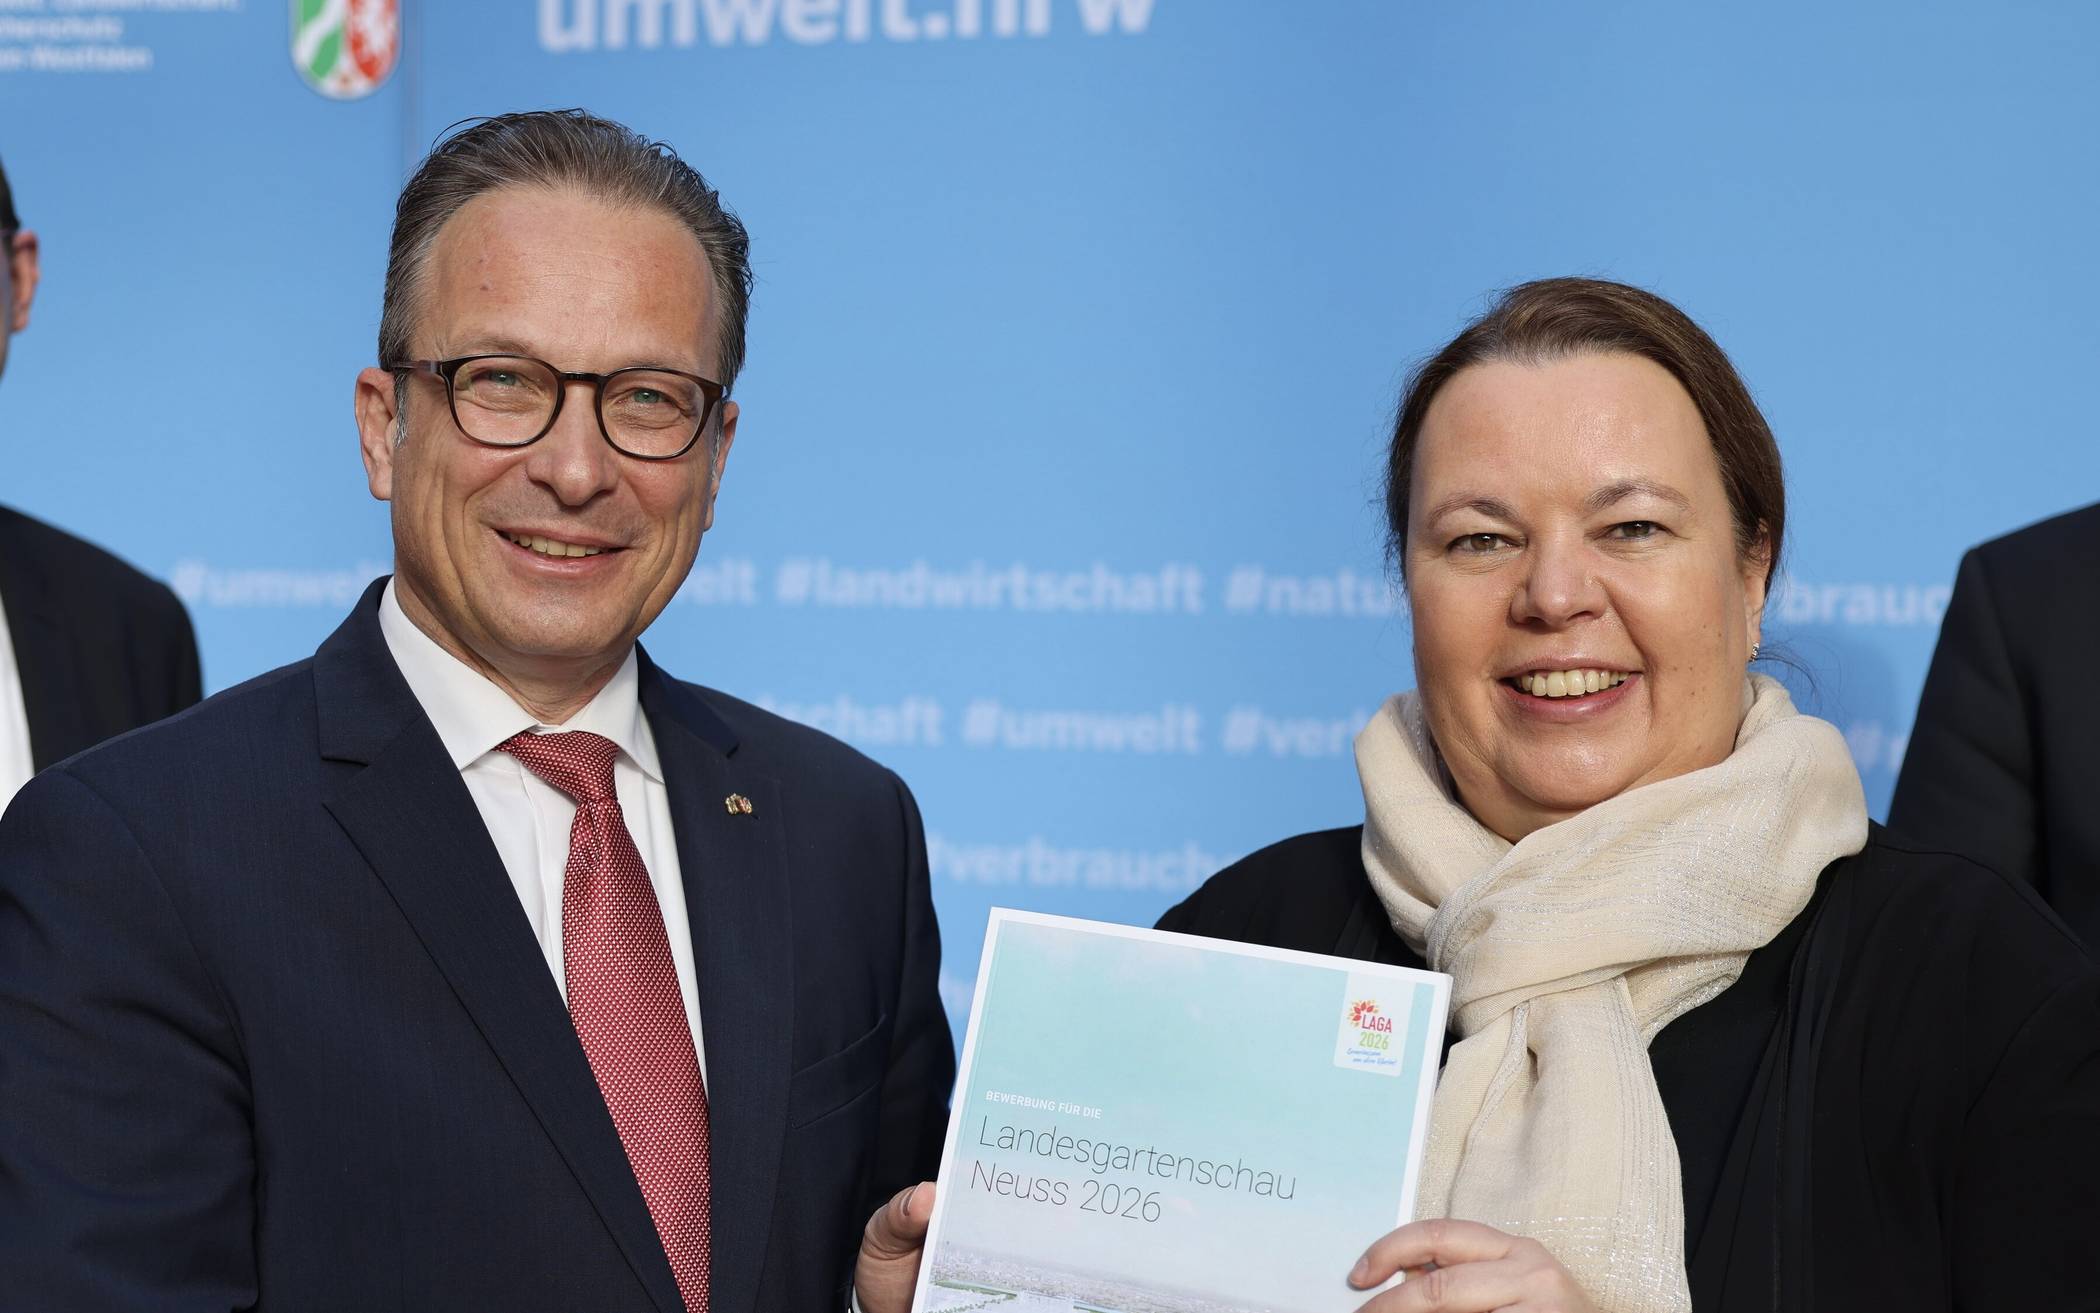  NRW-Umweltministerin Ursula Heinen-Esser und Bürgermeister Reiner Breuer heute morgen in Düsseldorf.  